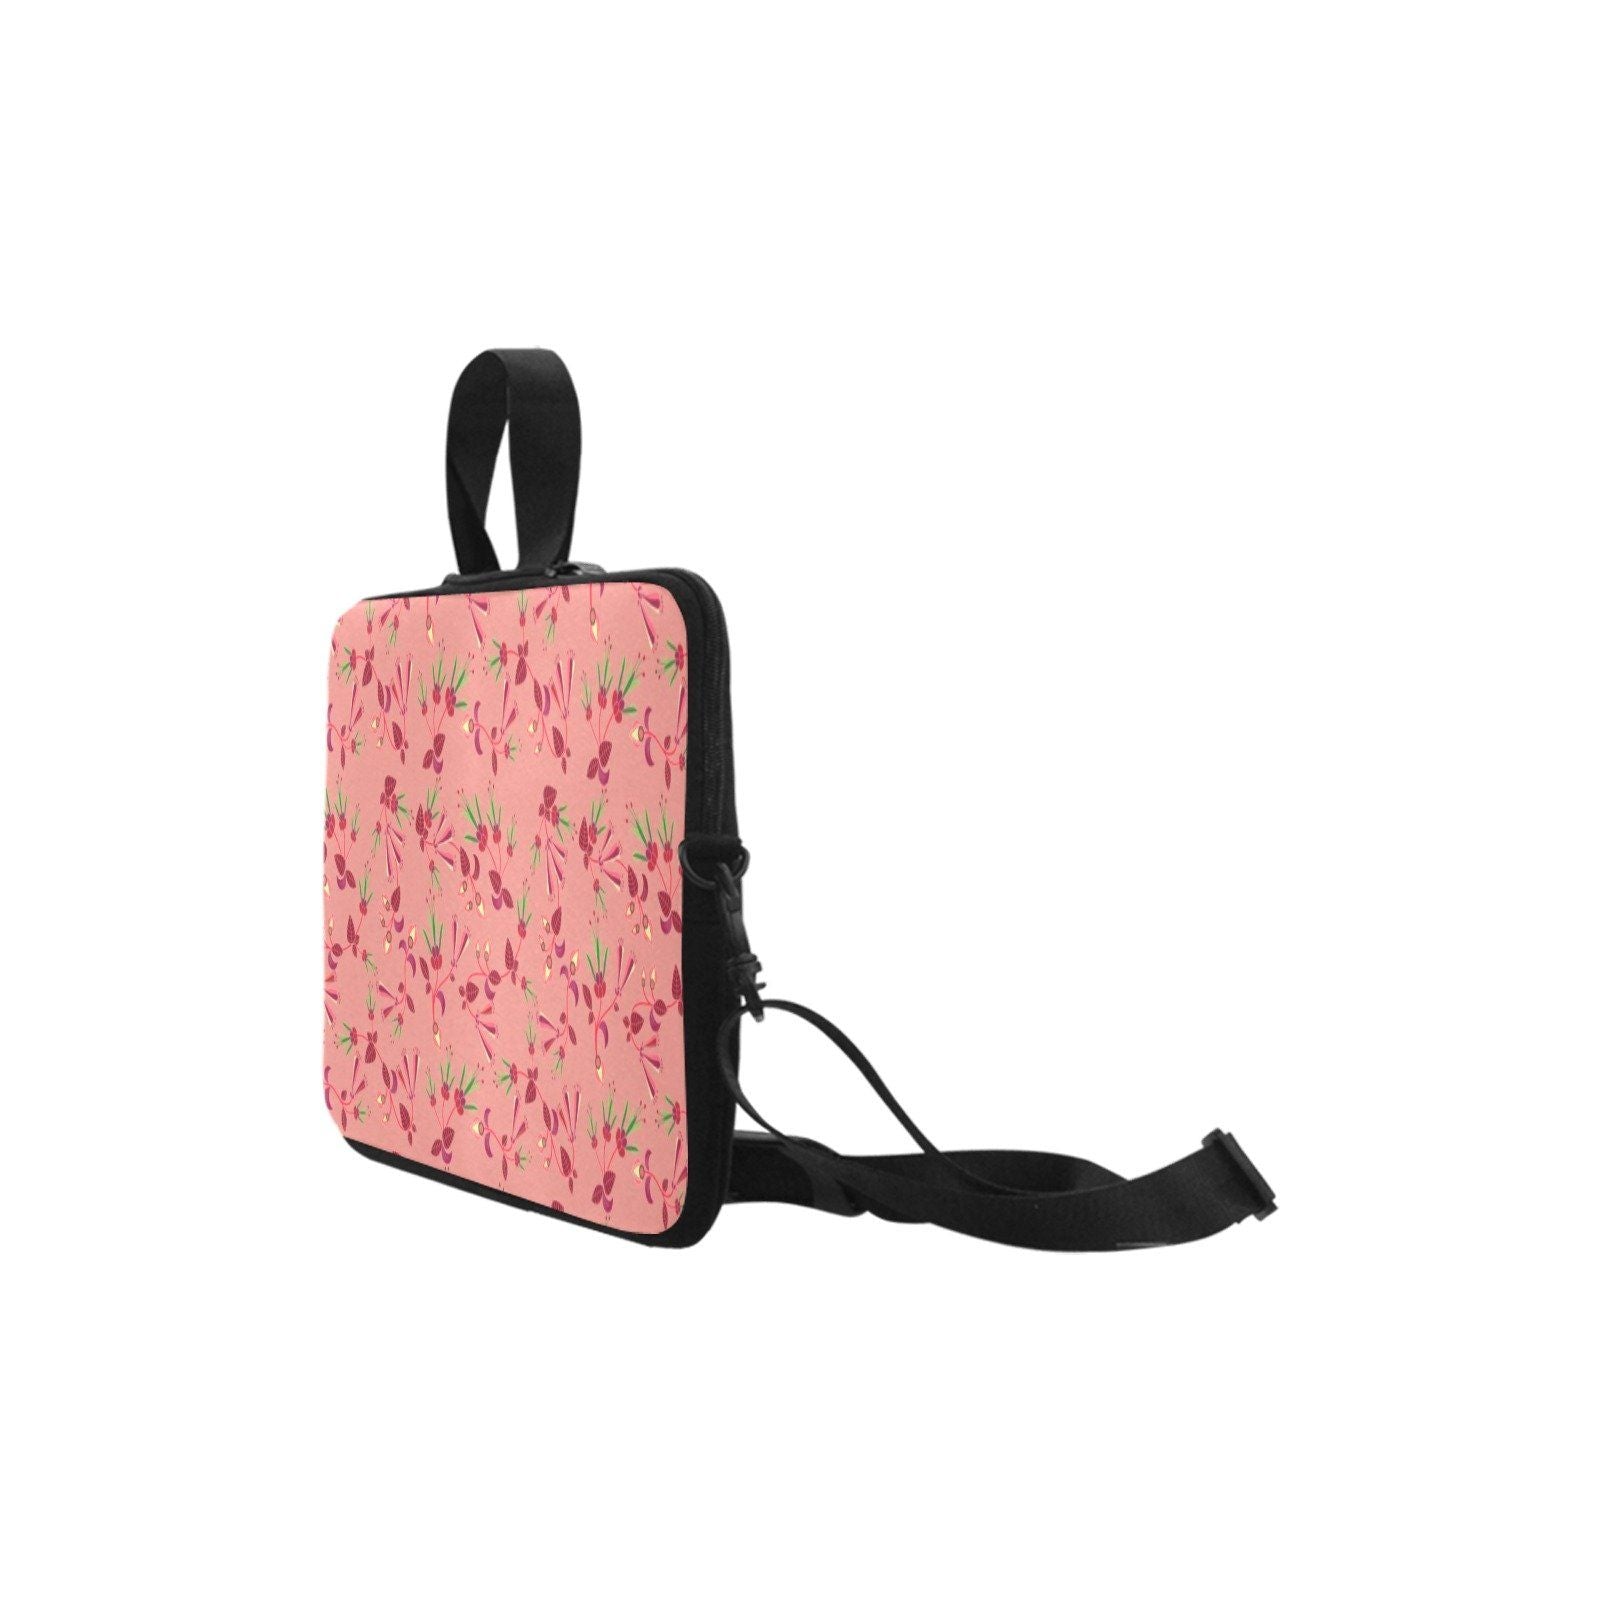 Swift Floral Peach Rouge Remix Laptop Handbags 13" Laptop Handbags 13" e-joyer 